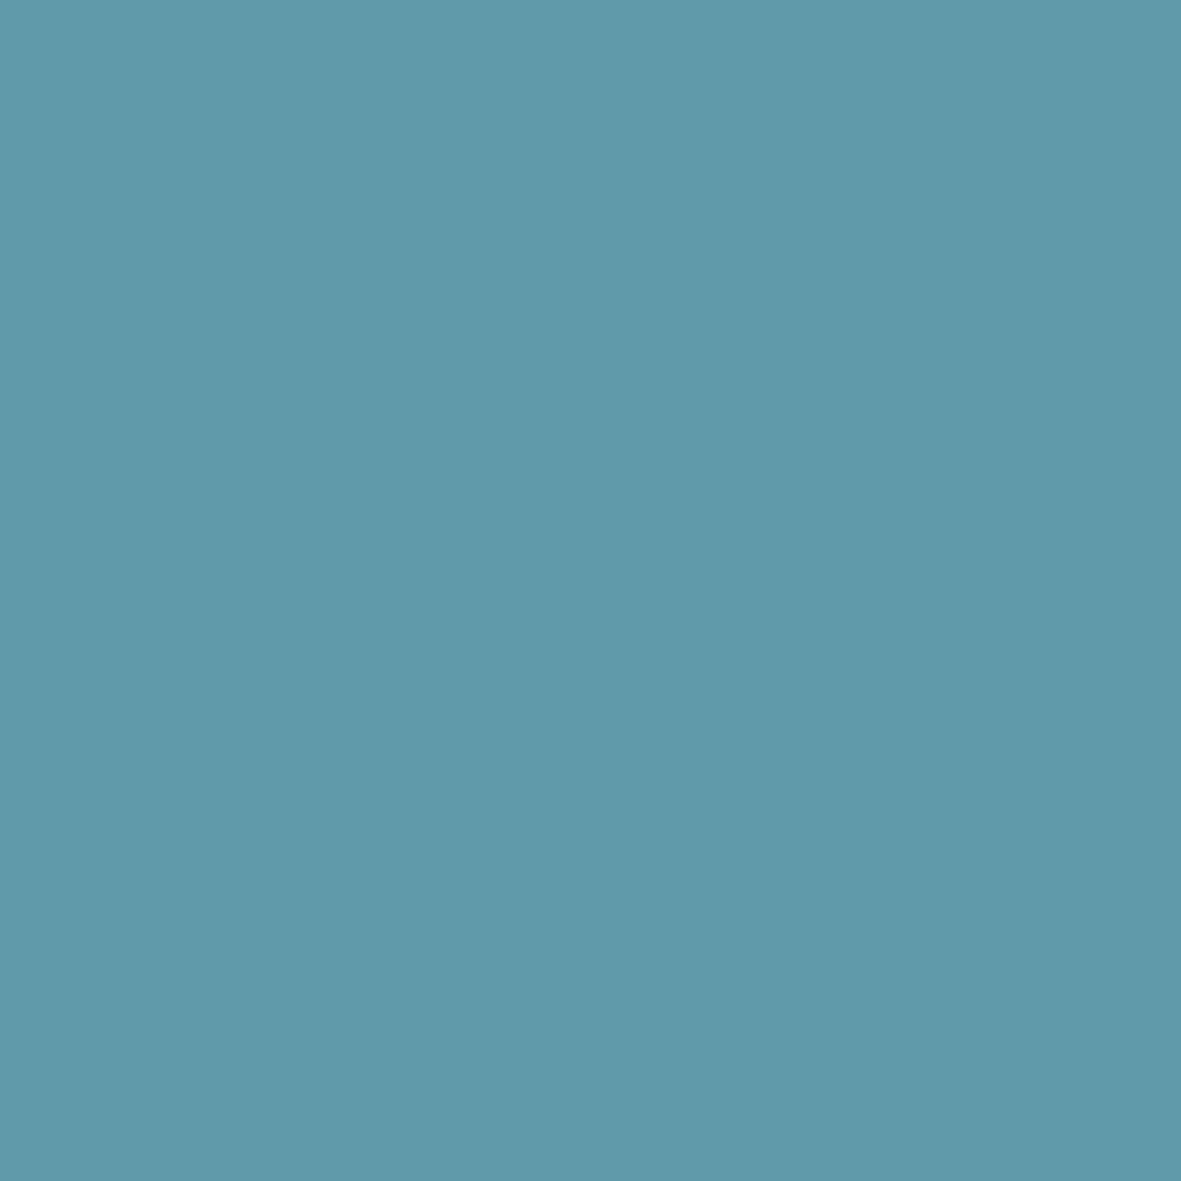 Gravotherm Folienfarbe Taubenblau für Texte, Logos und Muster 